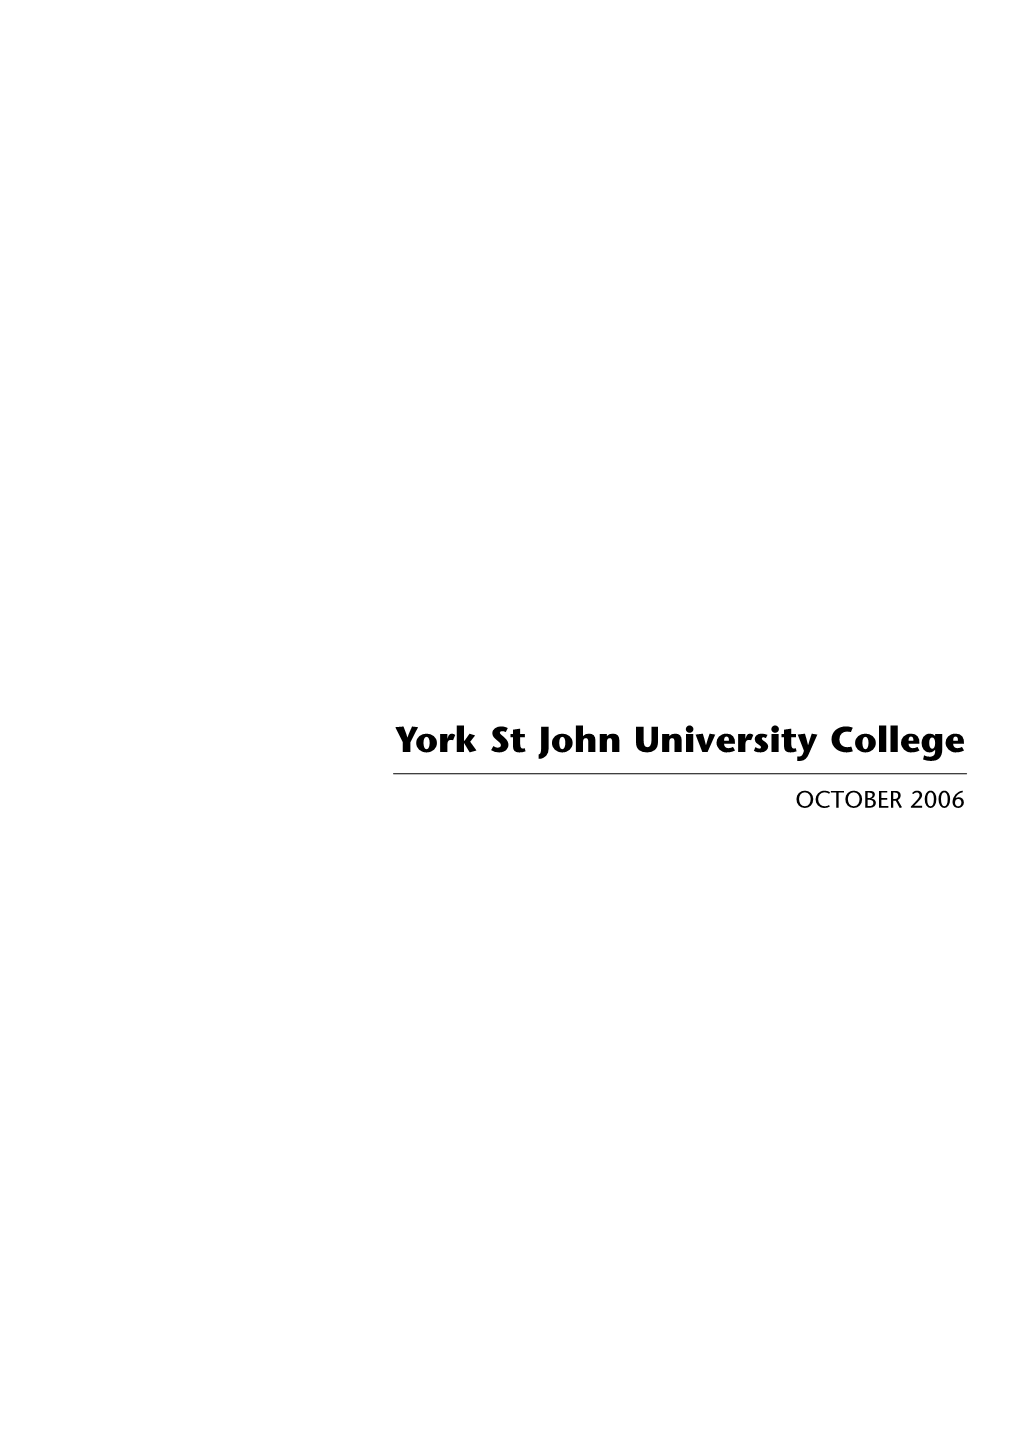 Institutional Audit: York St John University College October 2006